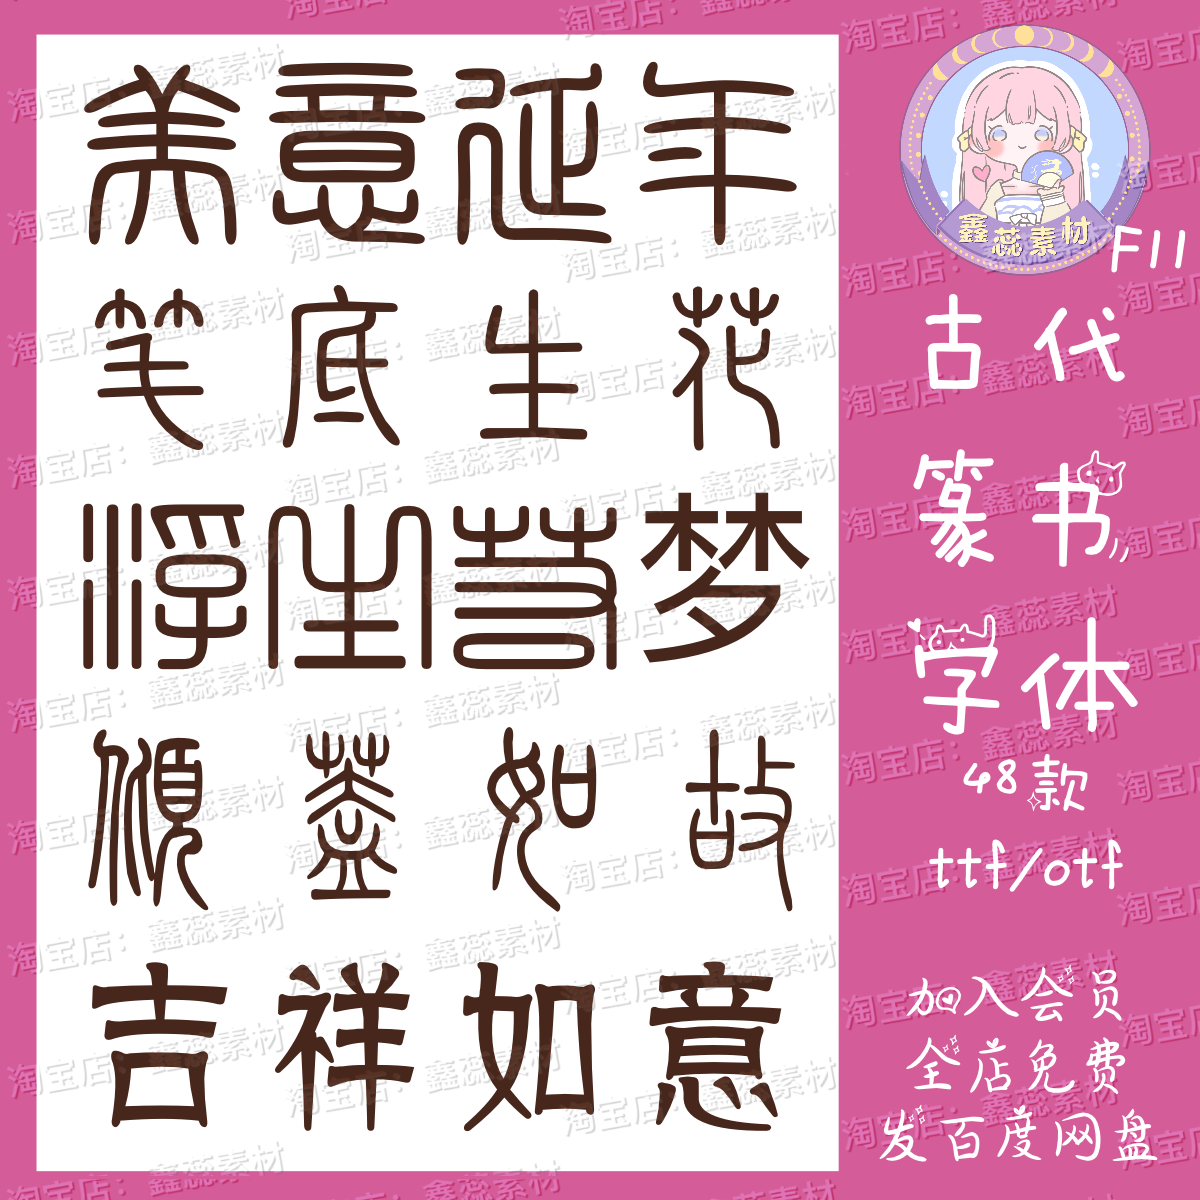 ps/procreate中文字体素材传统小纂甲骨文古风书写字体素材